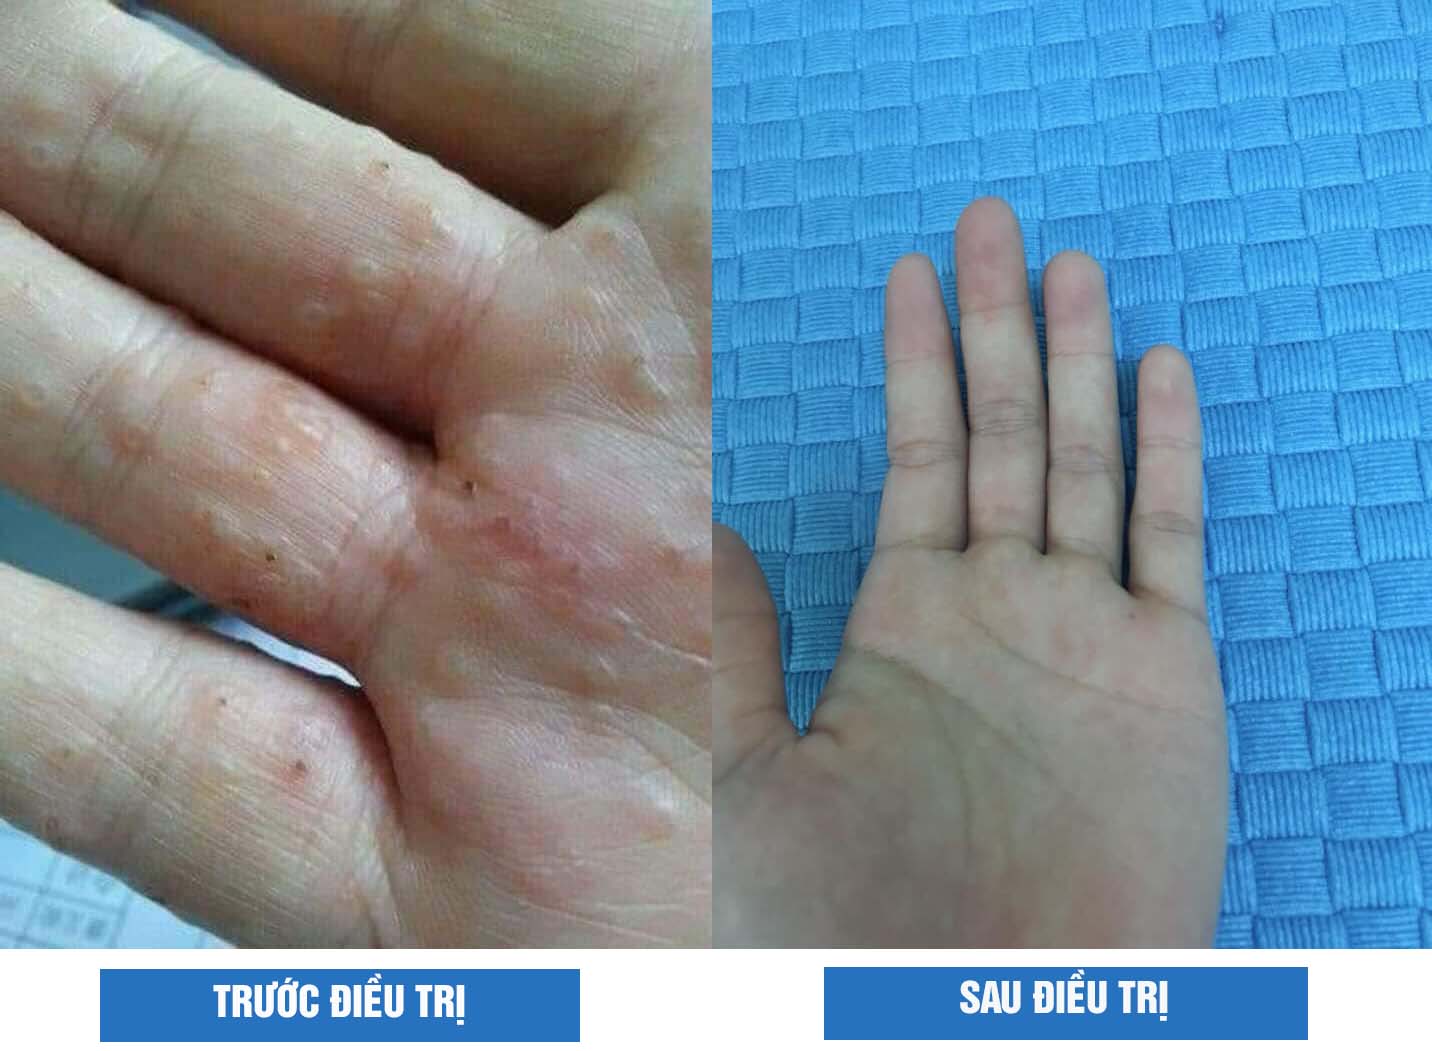 Hình ảnh trước và sau khi điều trị của tôi với bài thuốc Thanh bì Dưỡng can thang từ Trung tâm Thuốc dân tộc